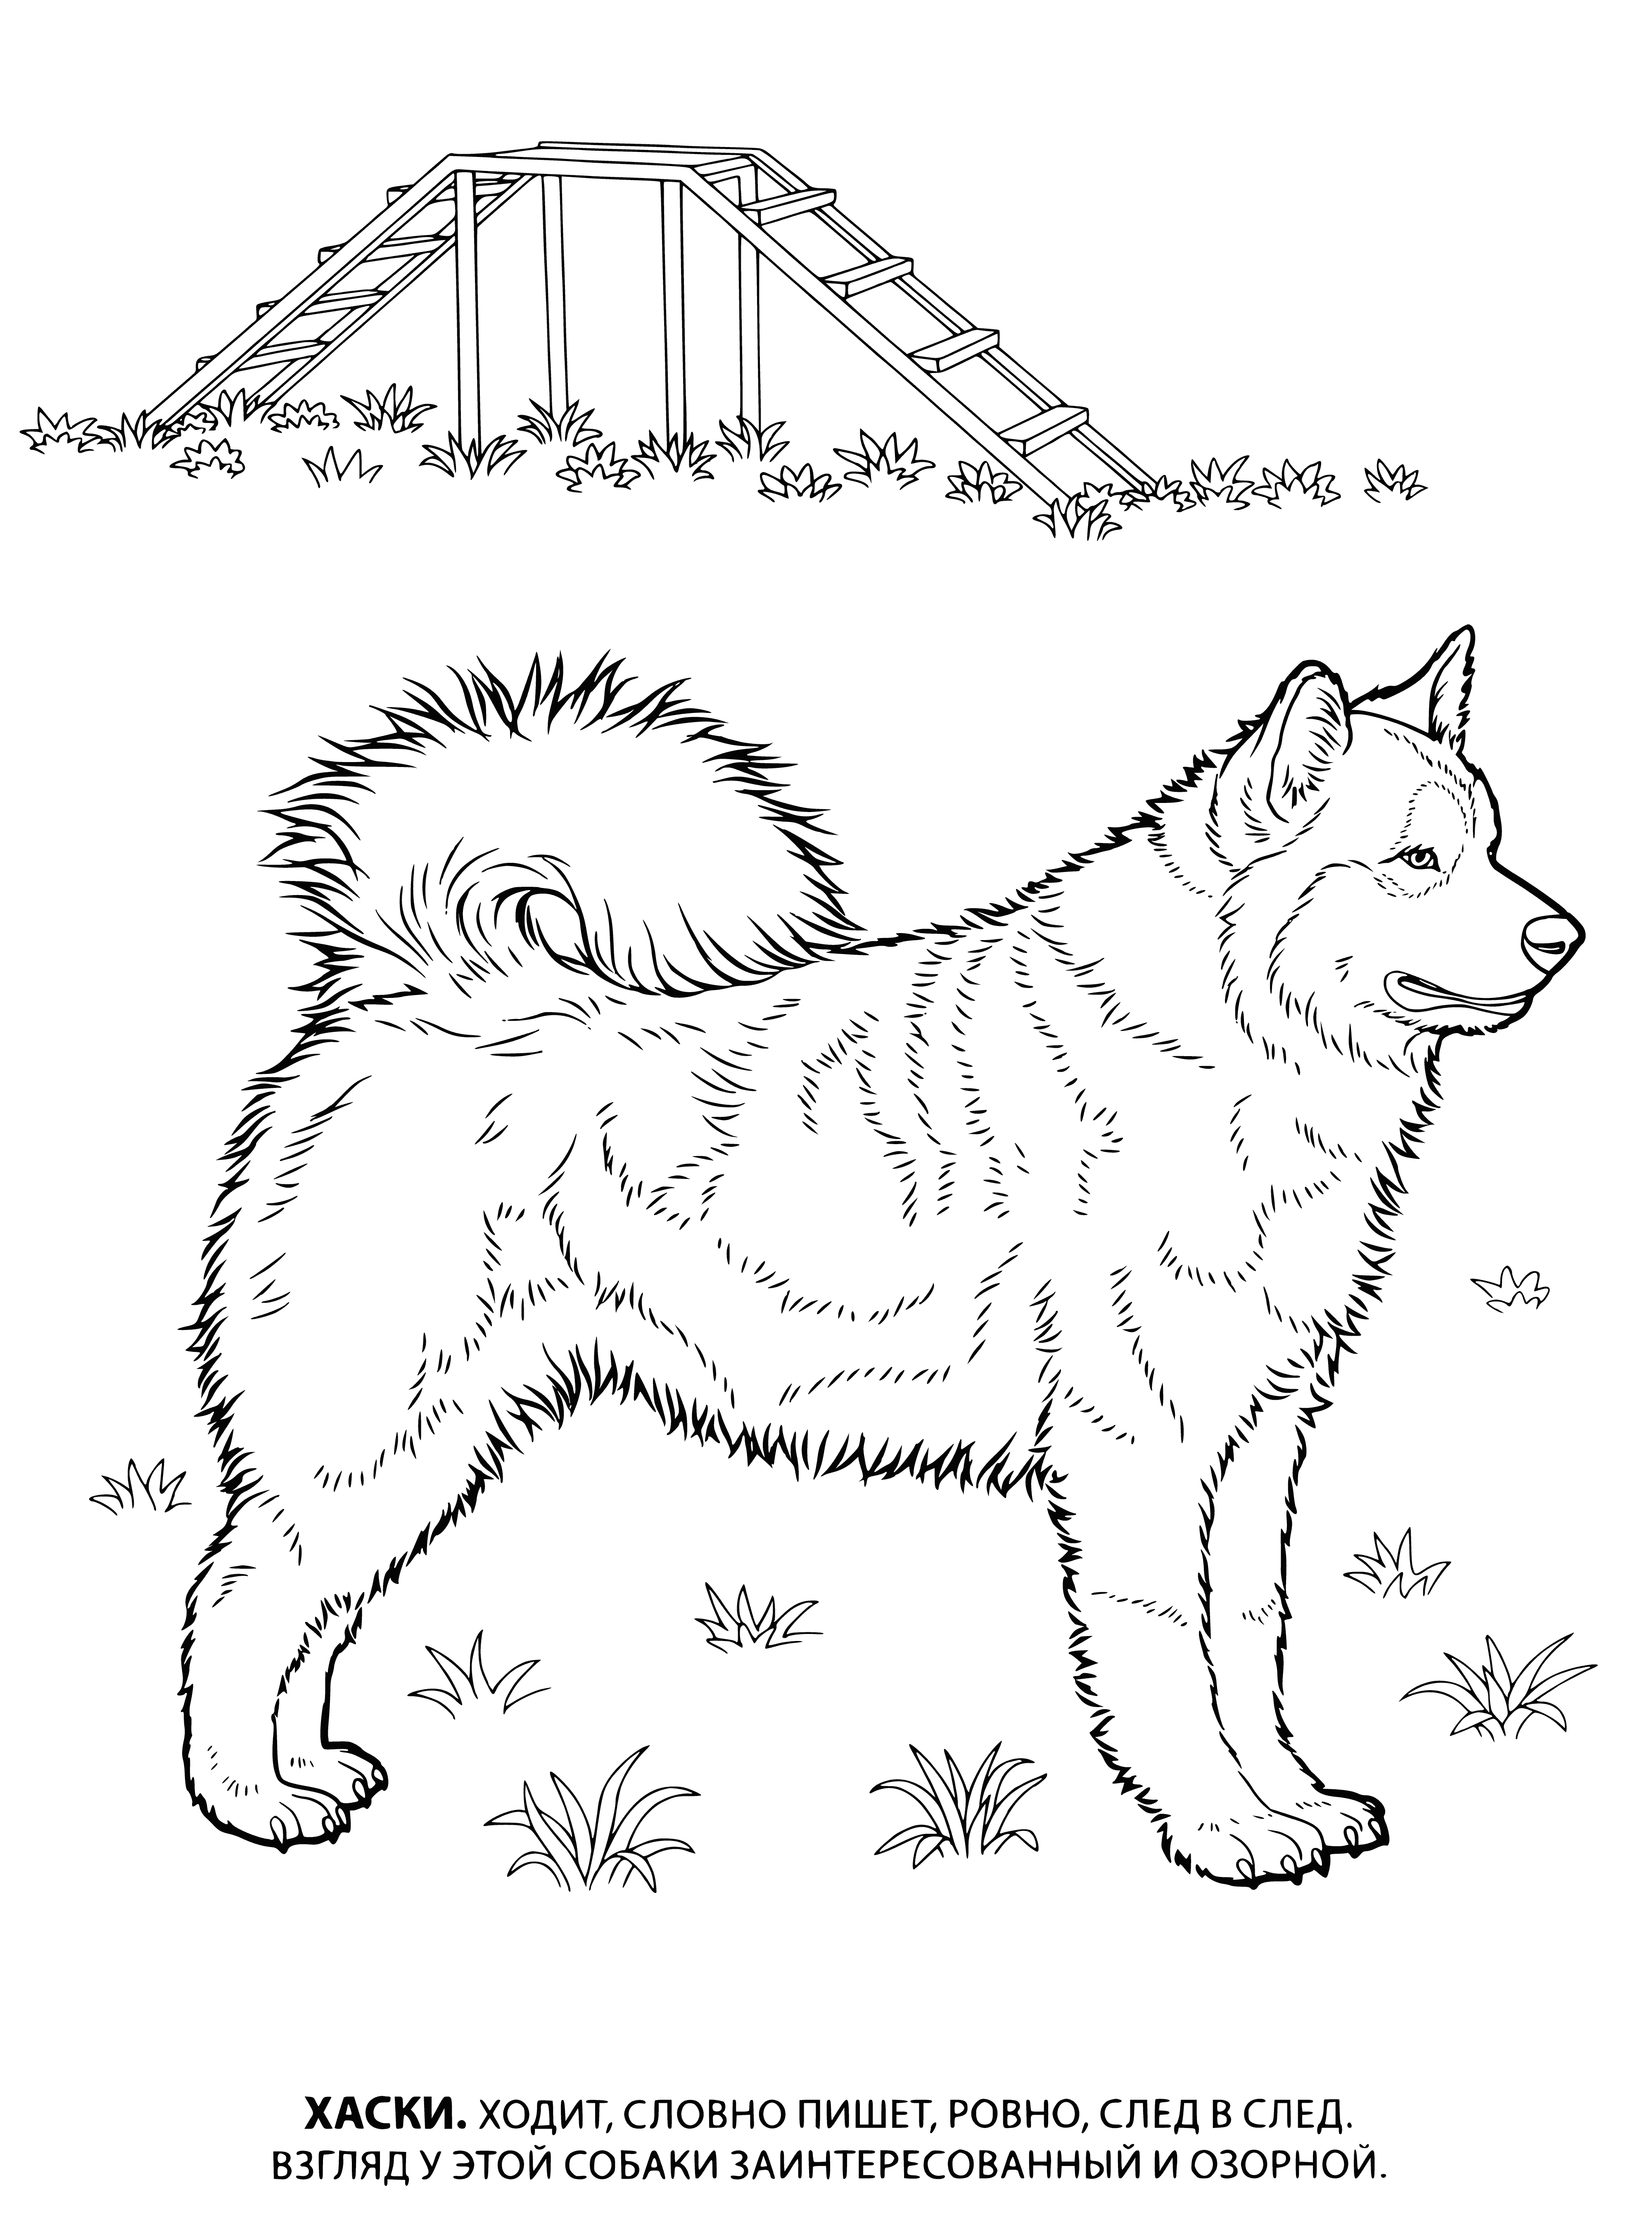 Husky Husky coloring page